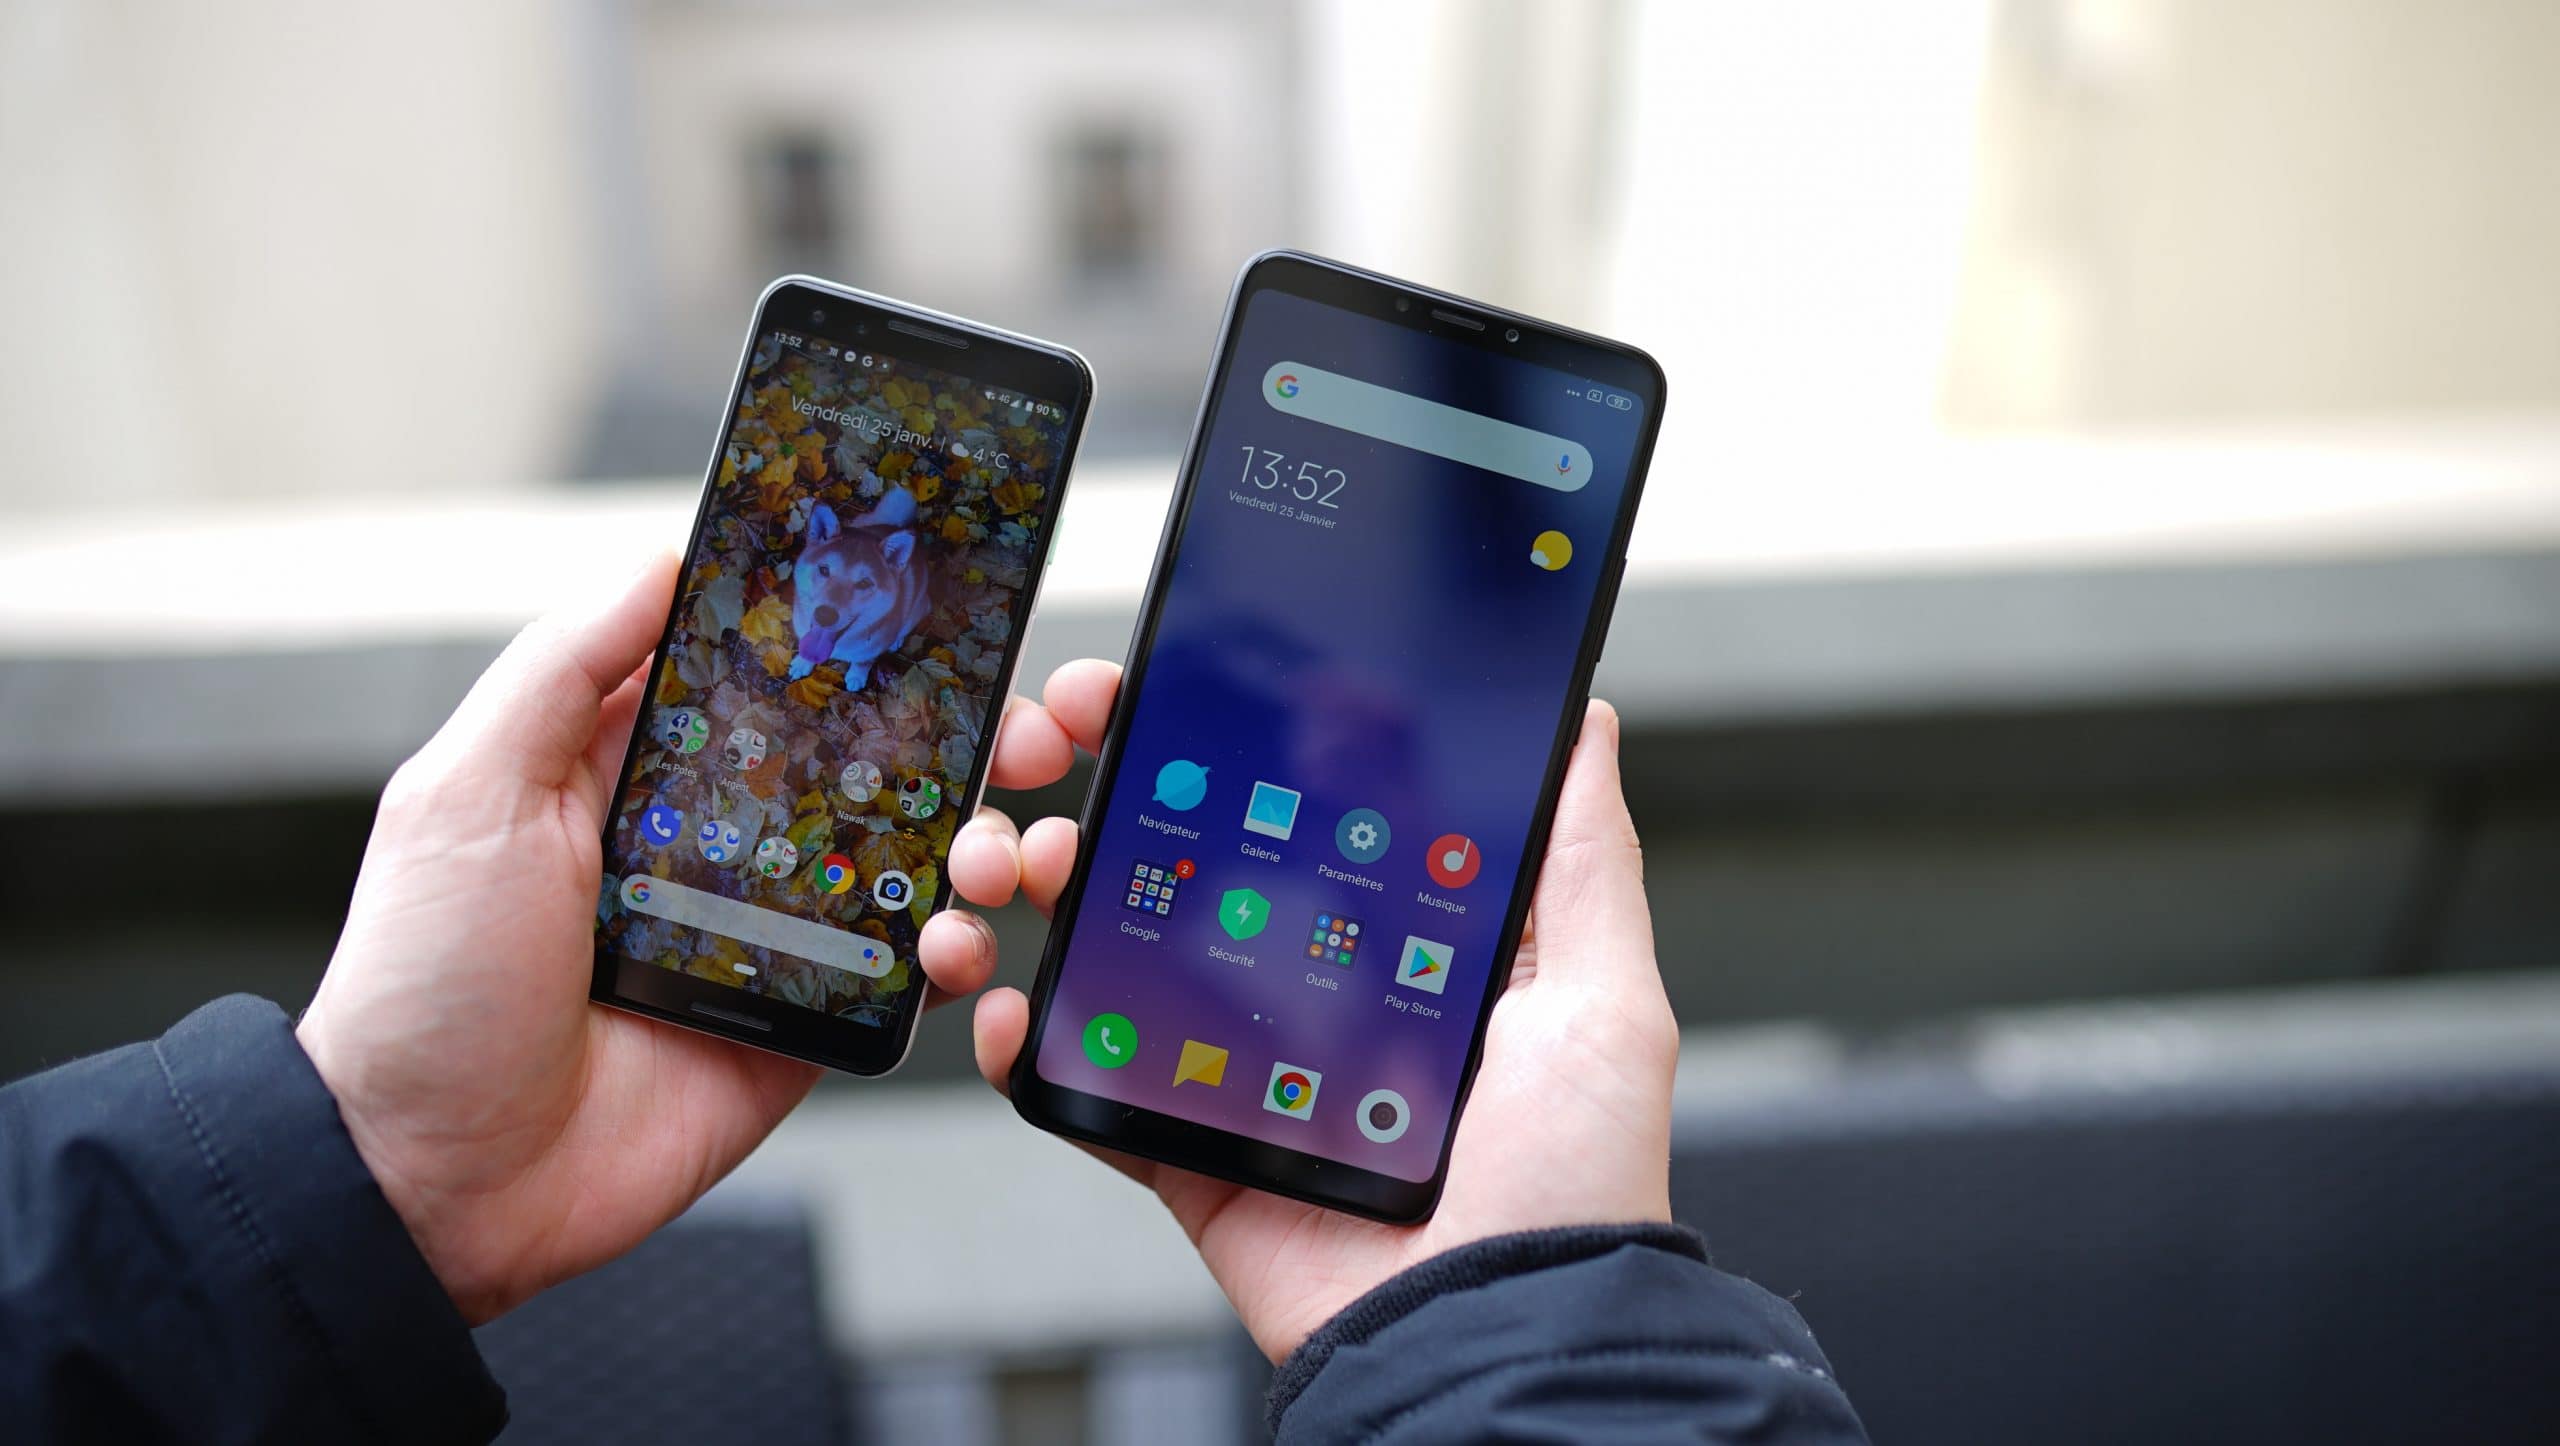 Топ-10 лучших смартфонов до 7000 рублей, которые можно купить в 2020 году – рейтинг zuzako по отзывам покупателей